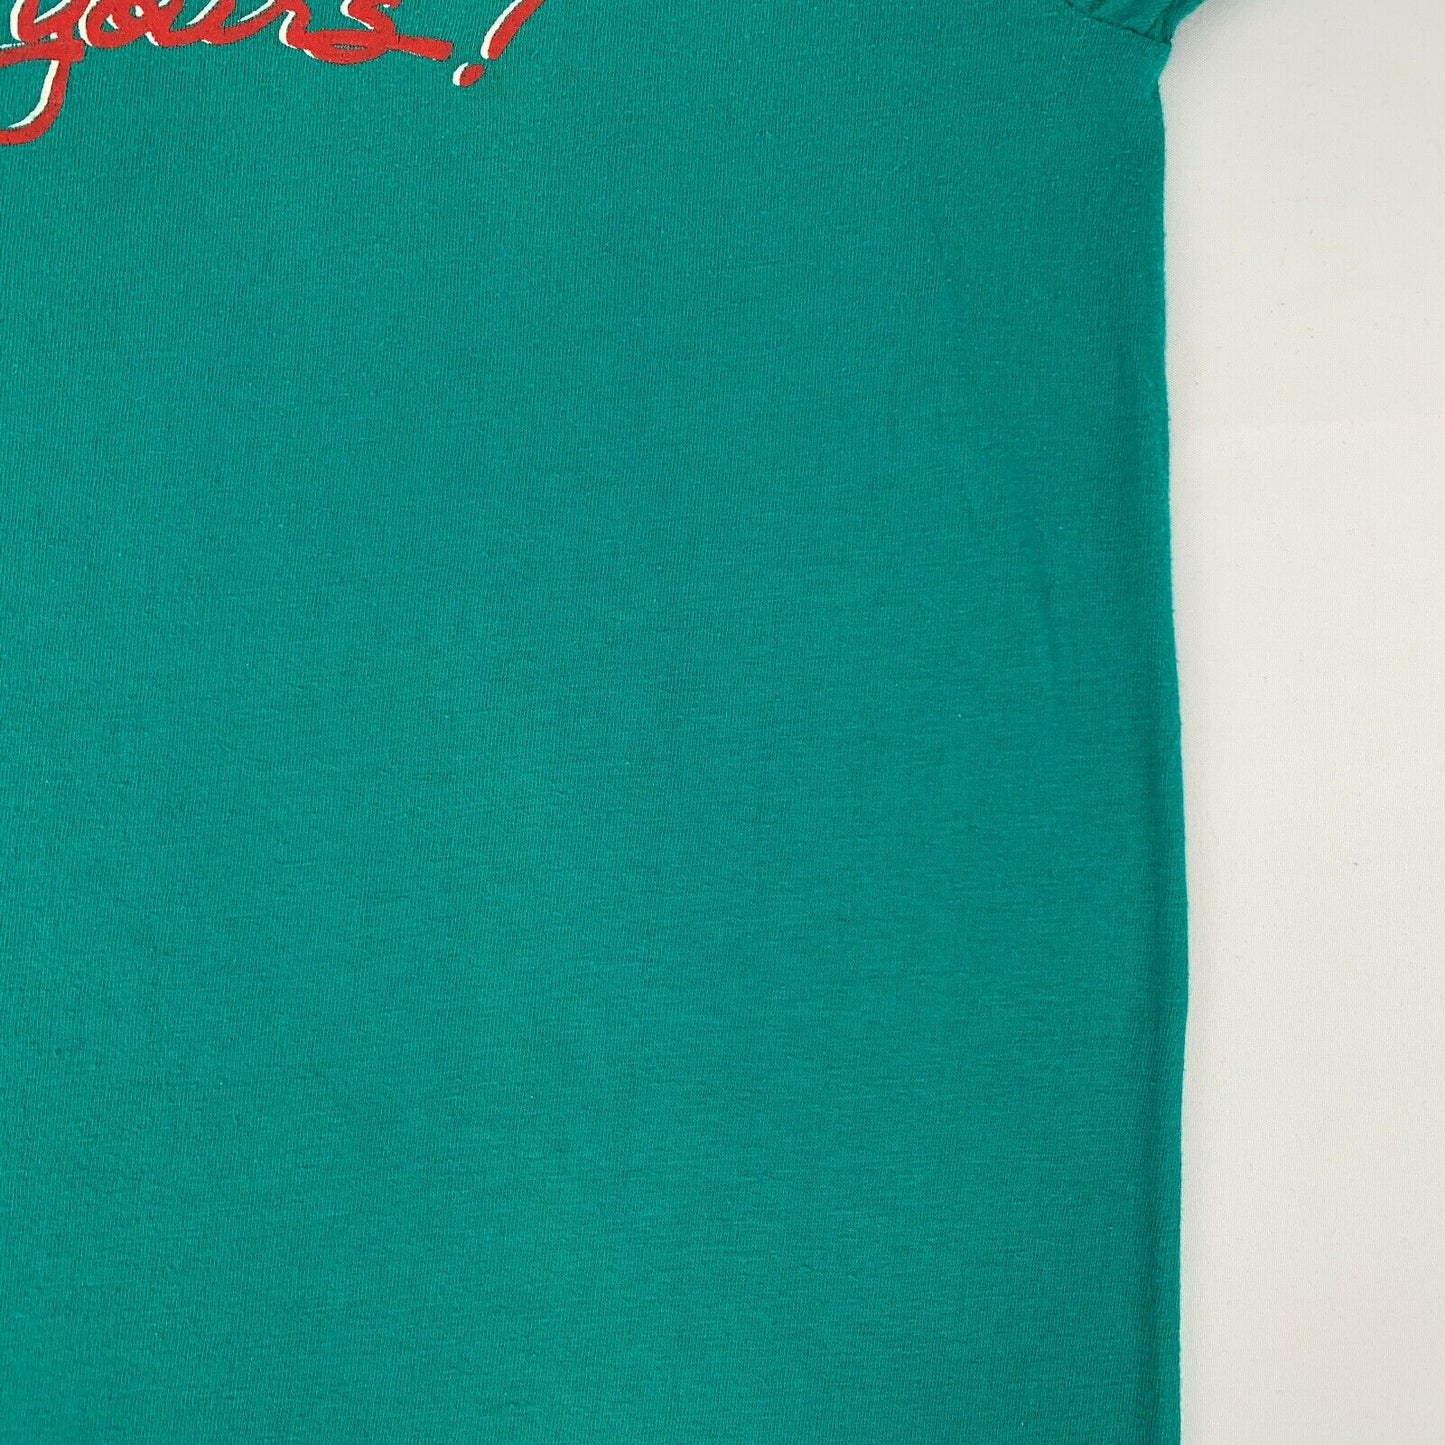 Navidad bebé soy tuyo Vintage 80s mujer camiseta vacaciones EE.UU. camiseta unisex pequeña